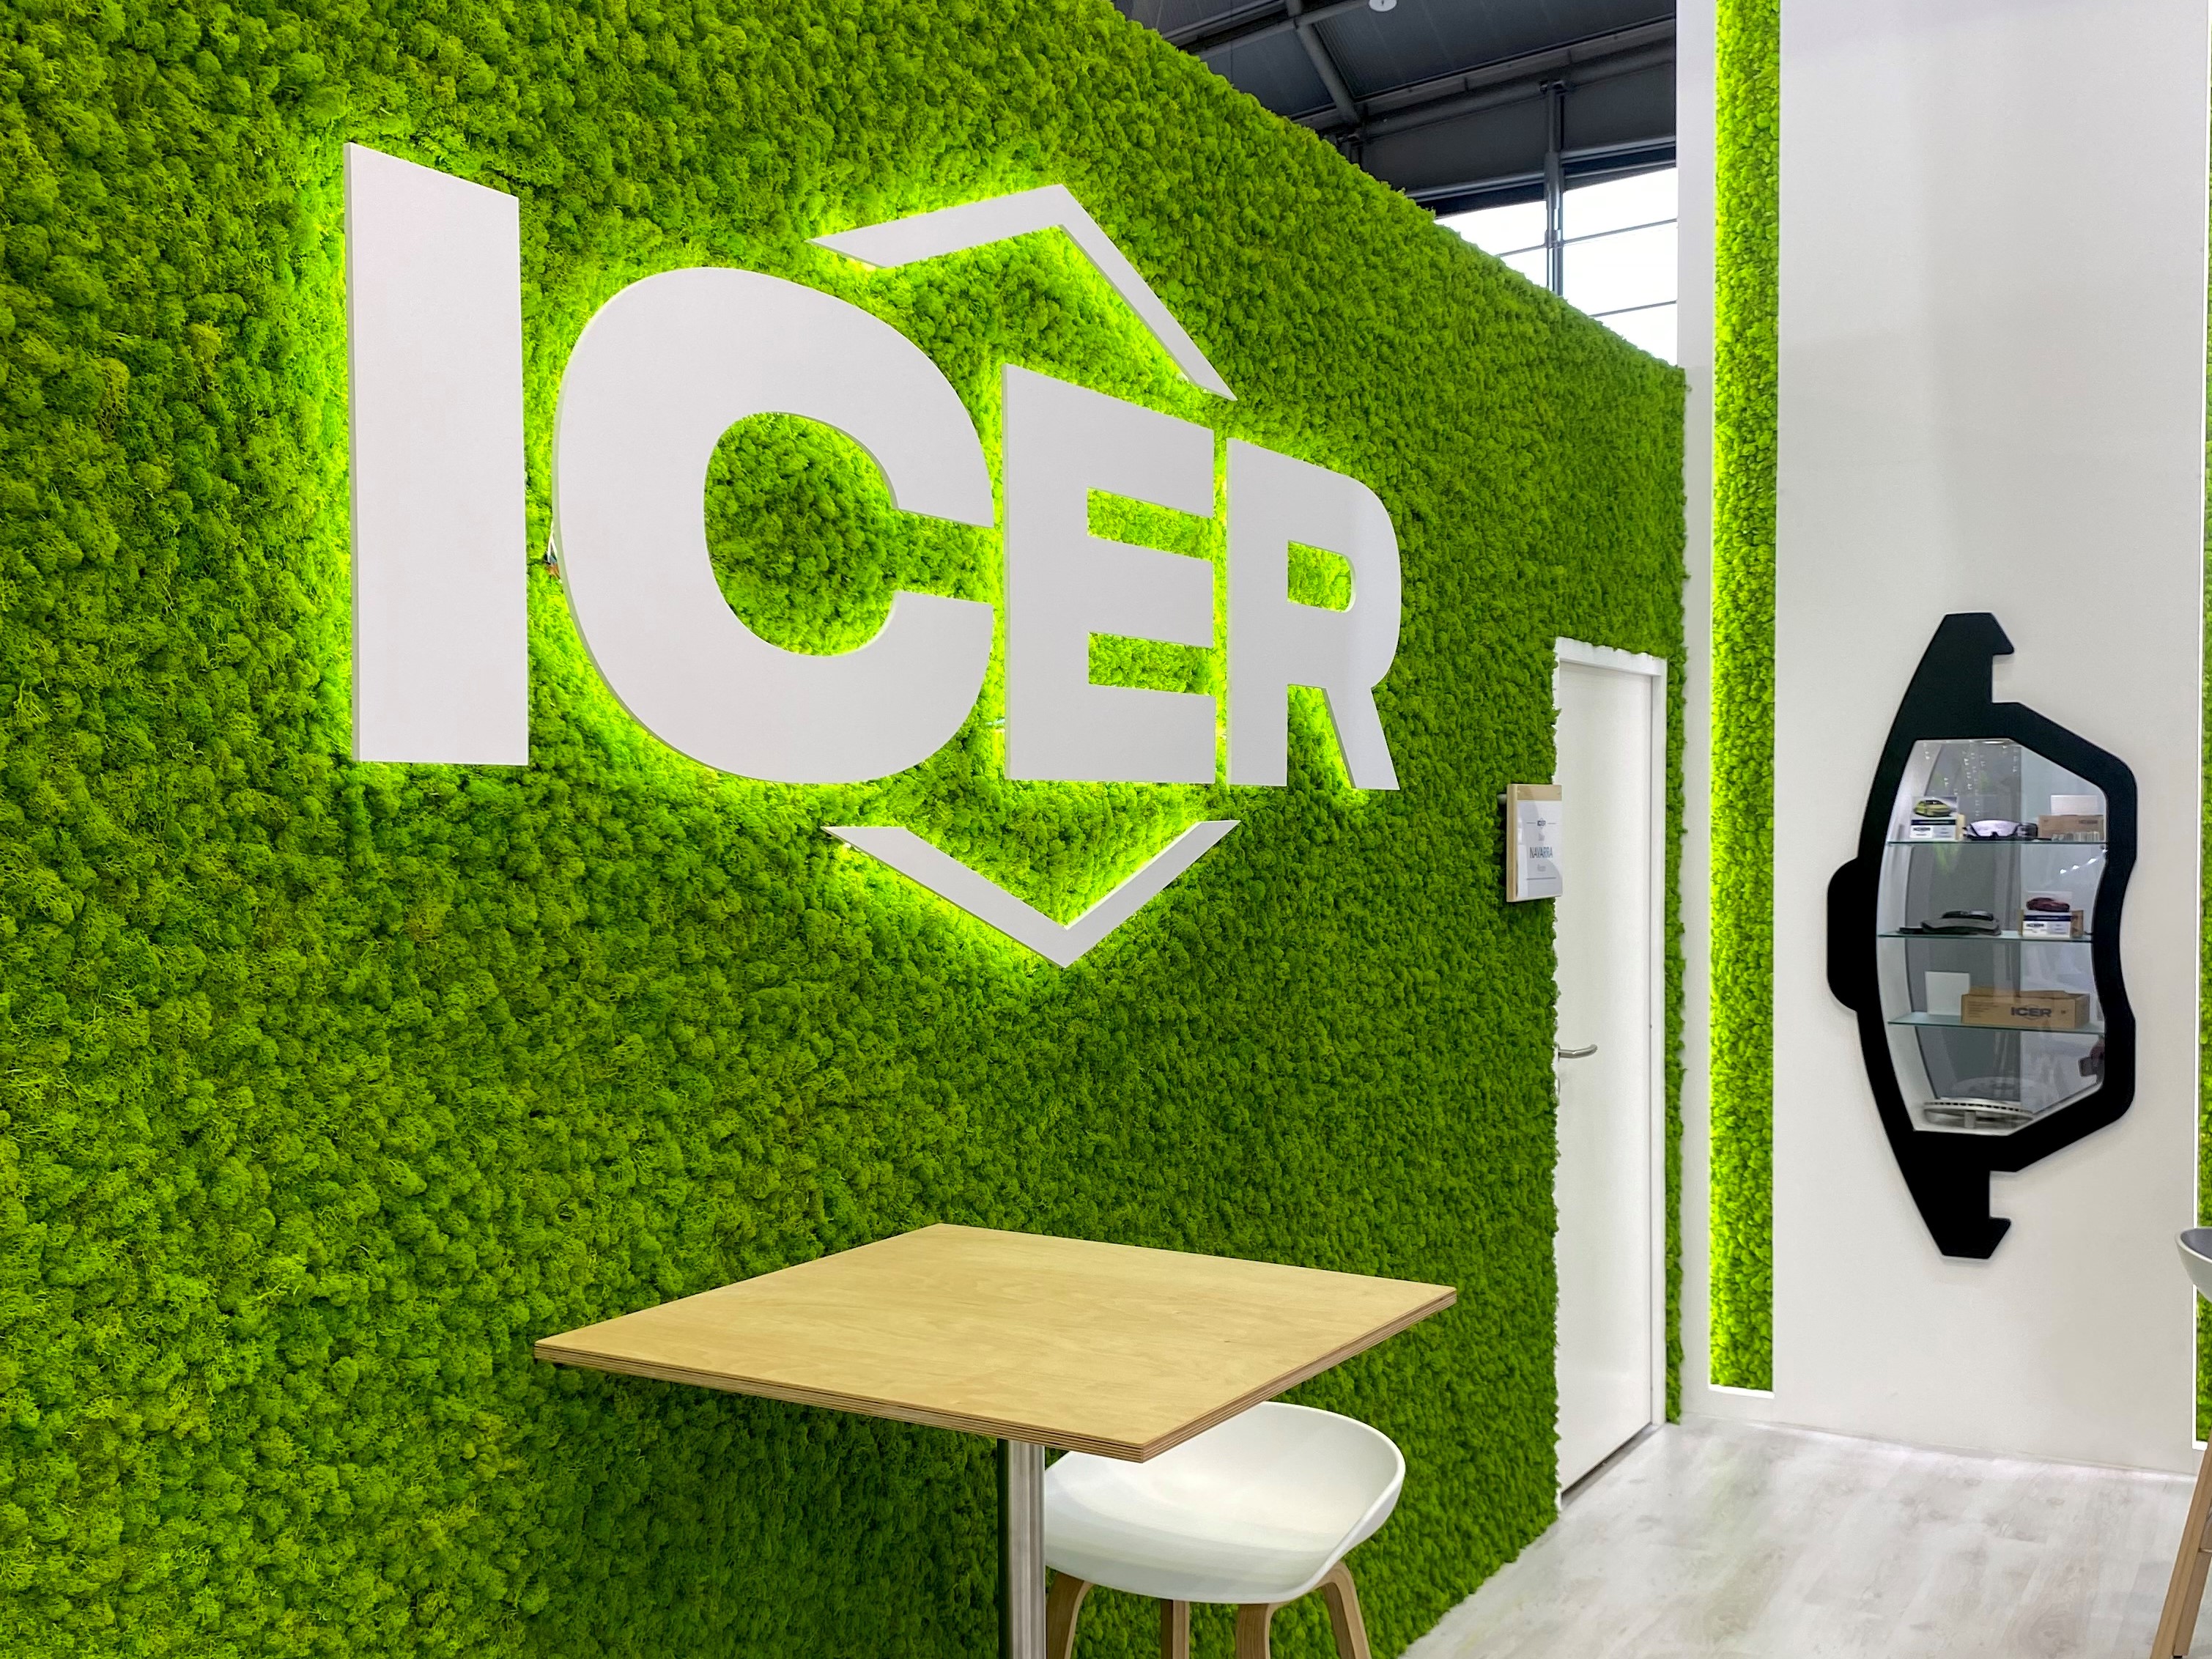 Icer Brakes presenta en Automechanika Frankfurt dos nuevas líneas de productos